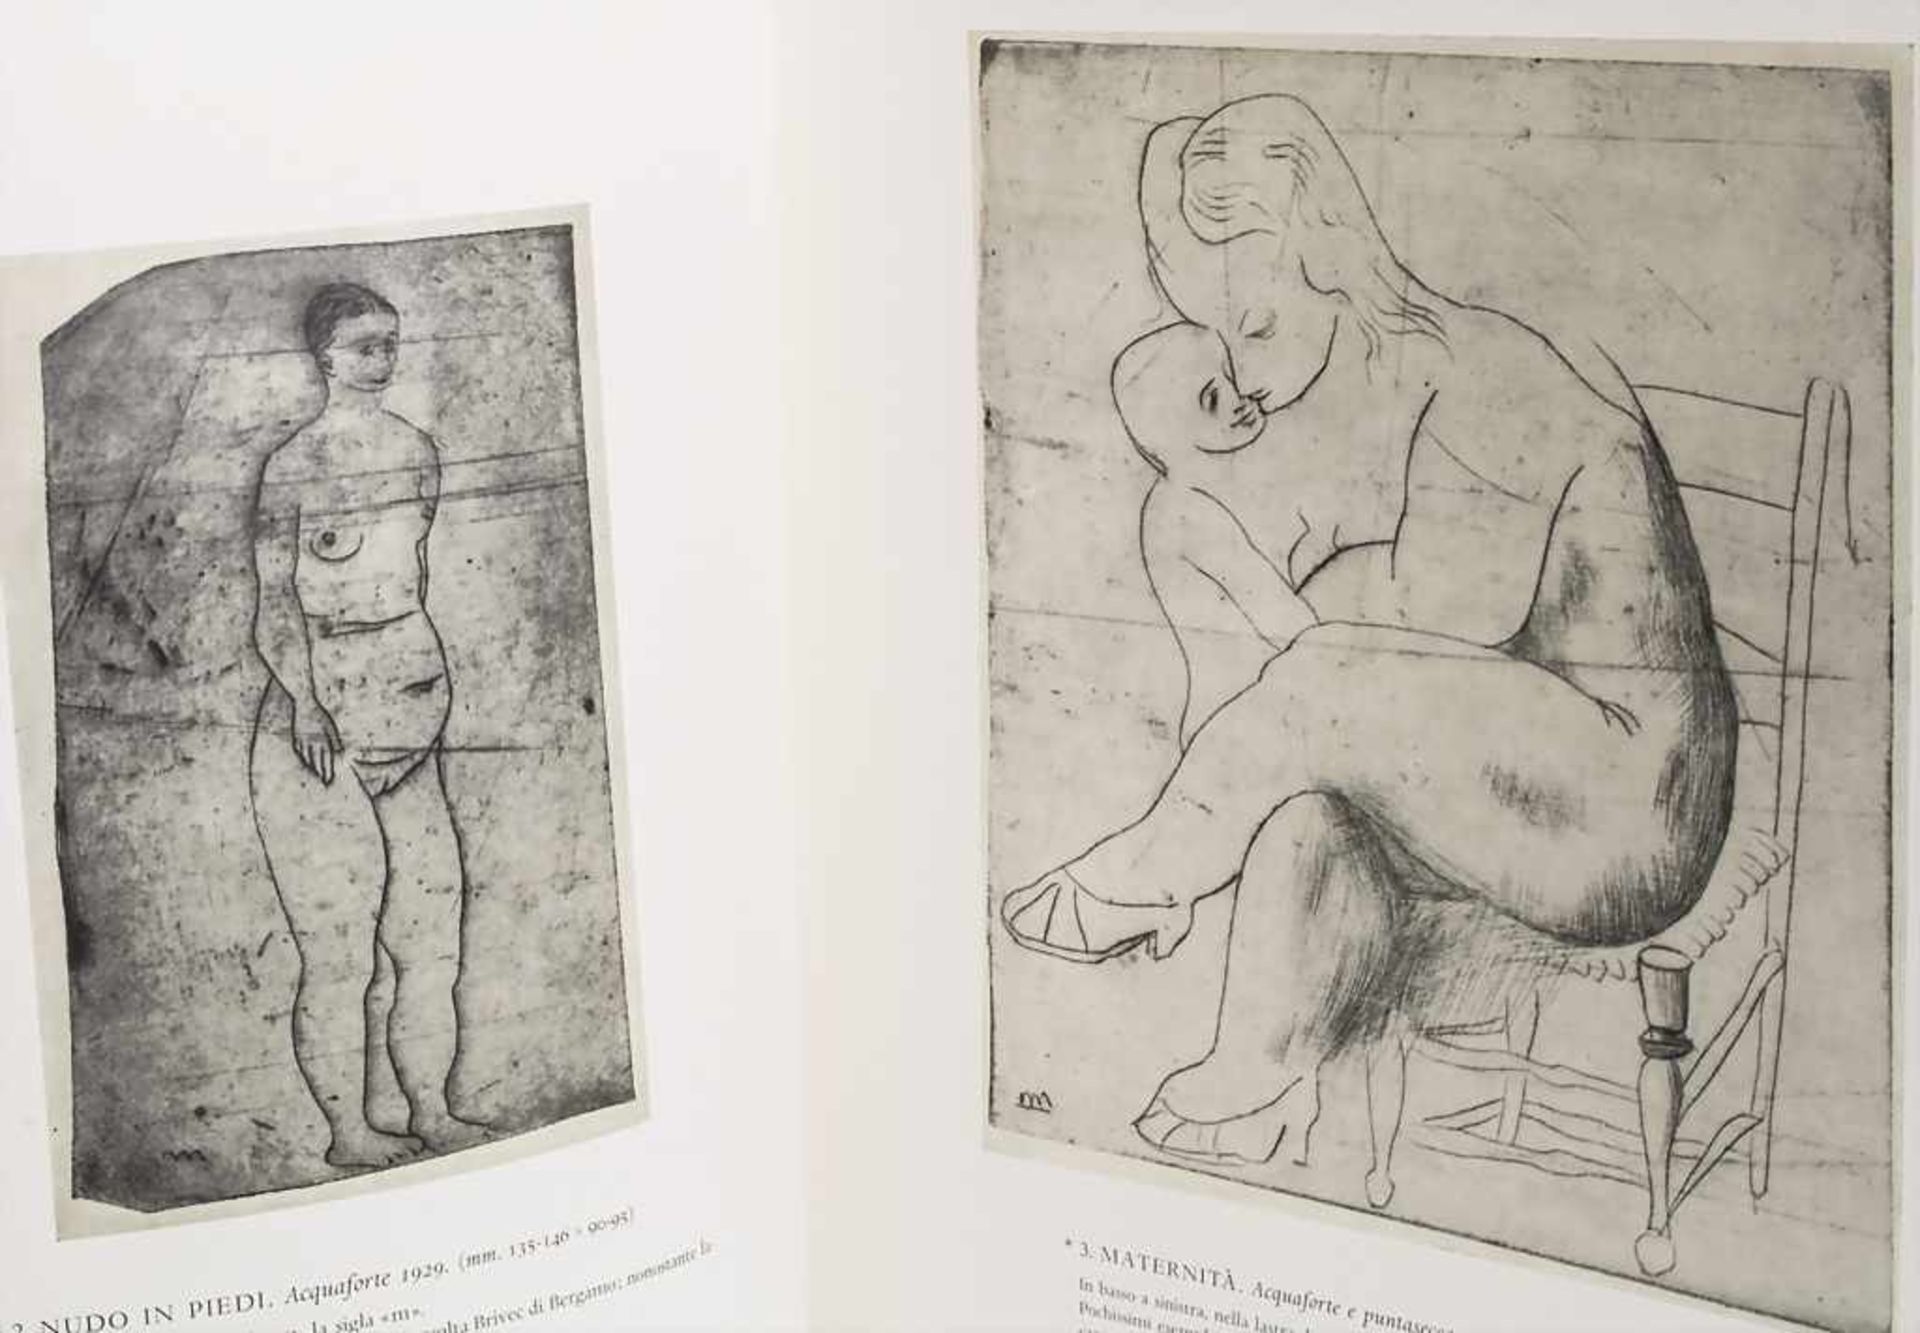 Alfonso Ciranna: Giacomo manzu. Catalogo delle opere grafiche 1929-1968 - Image 2 of 2